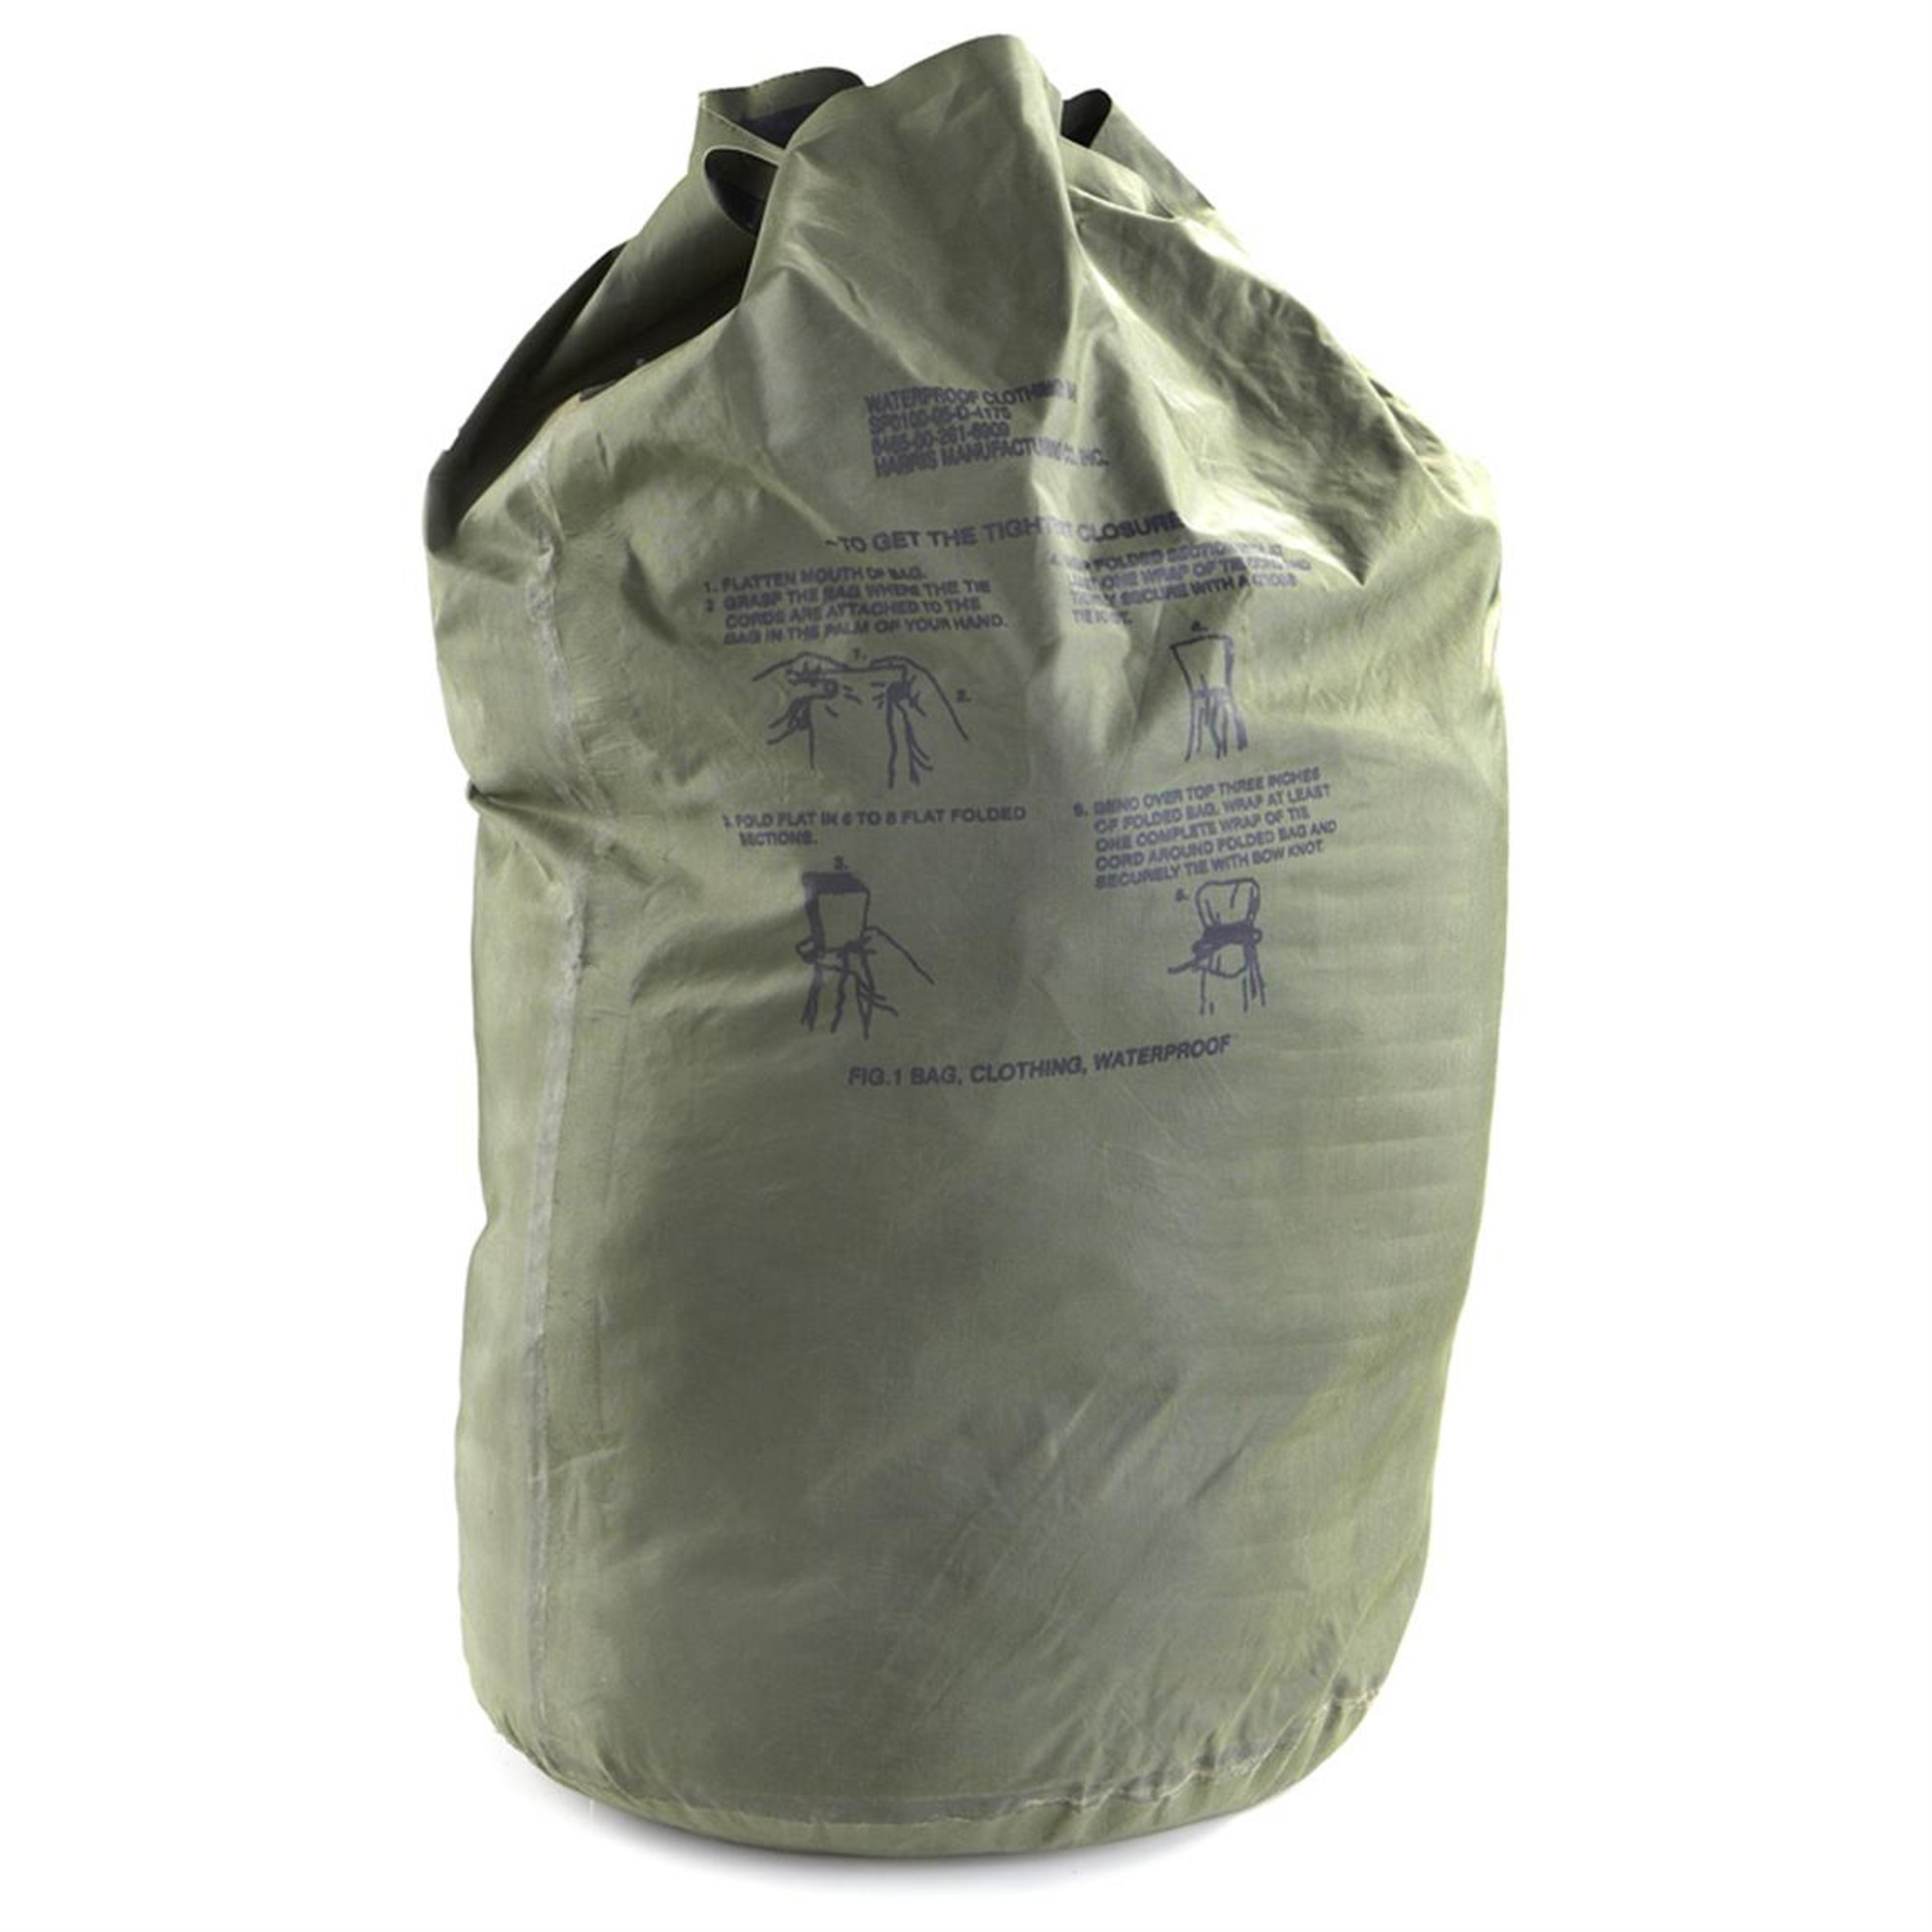 U.S. Armed Forces Waterproof Clothing Bag